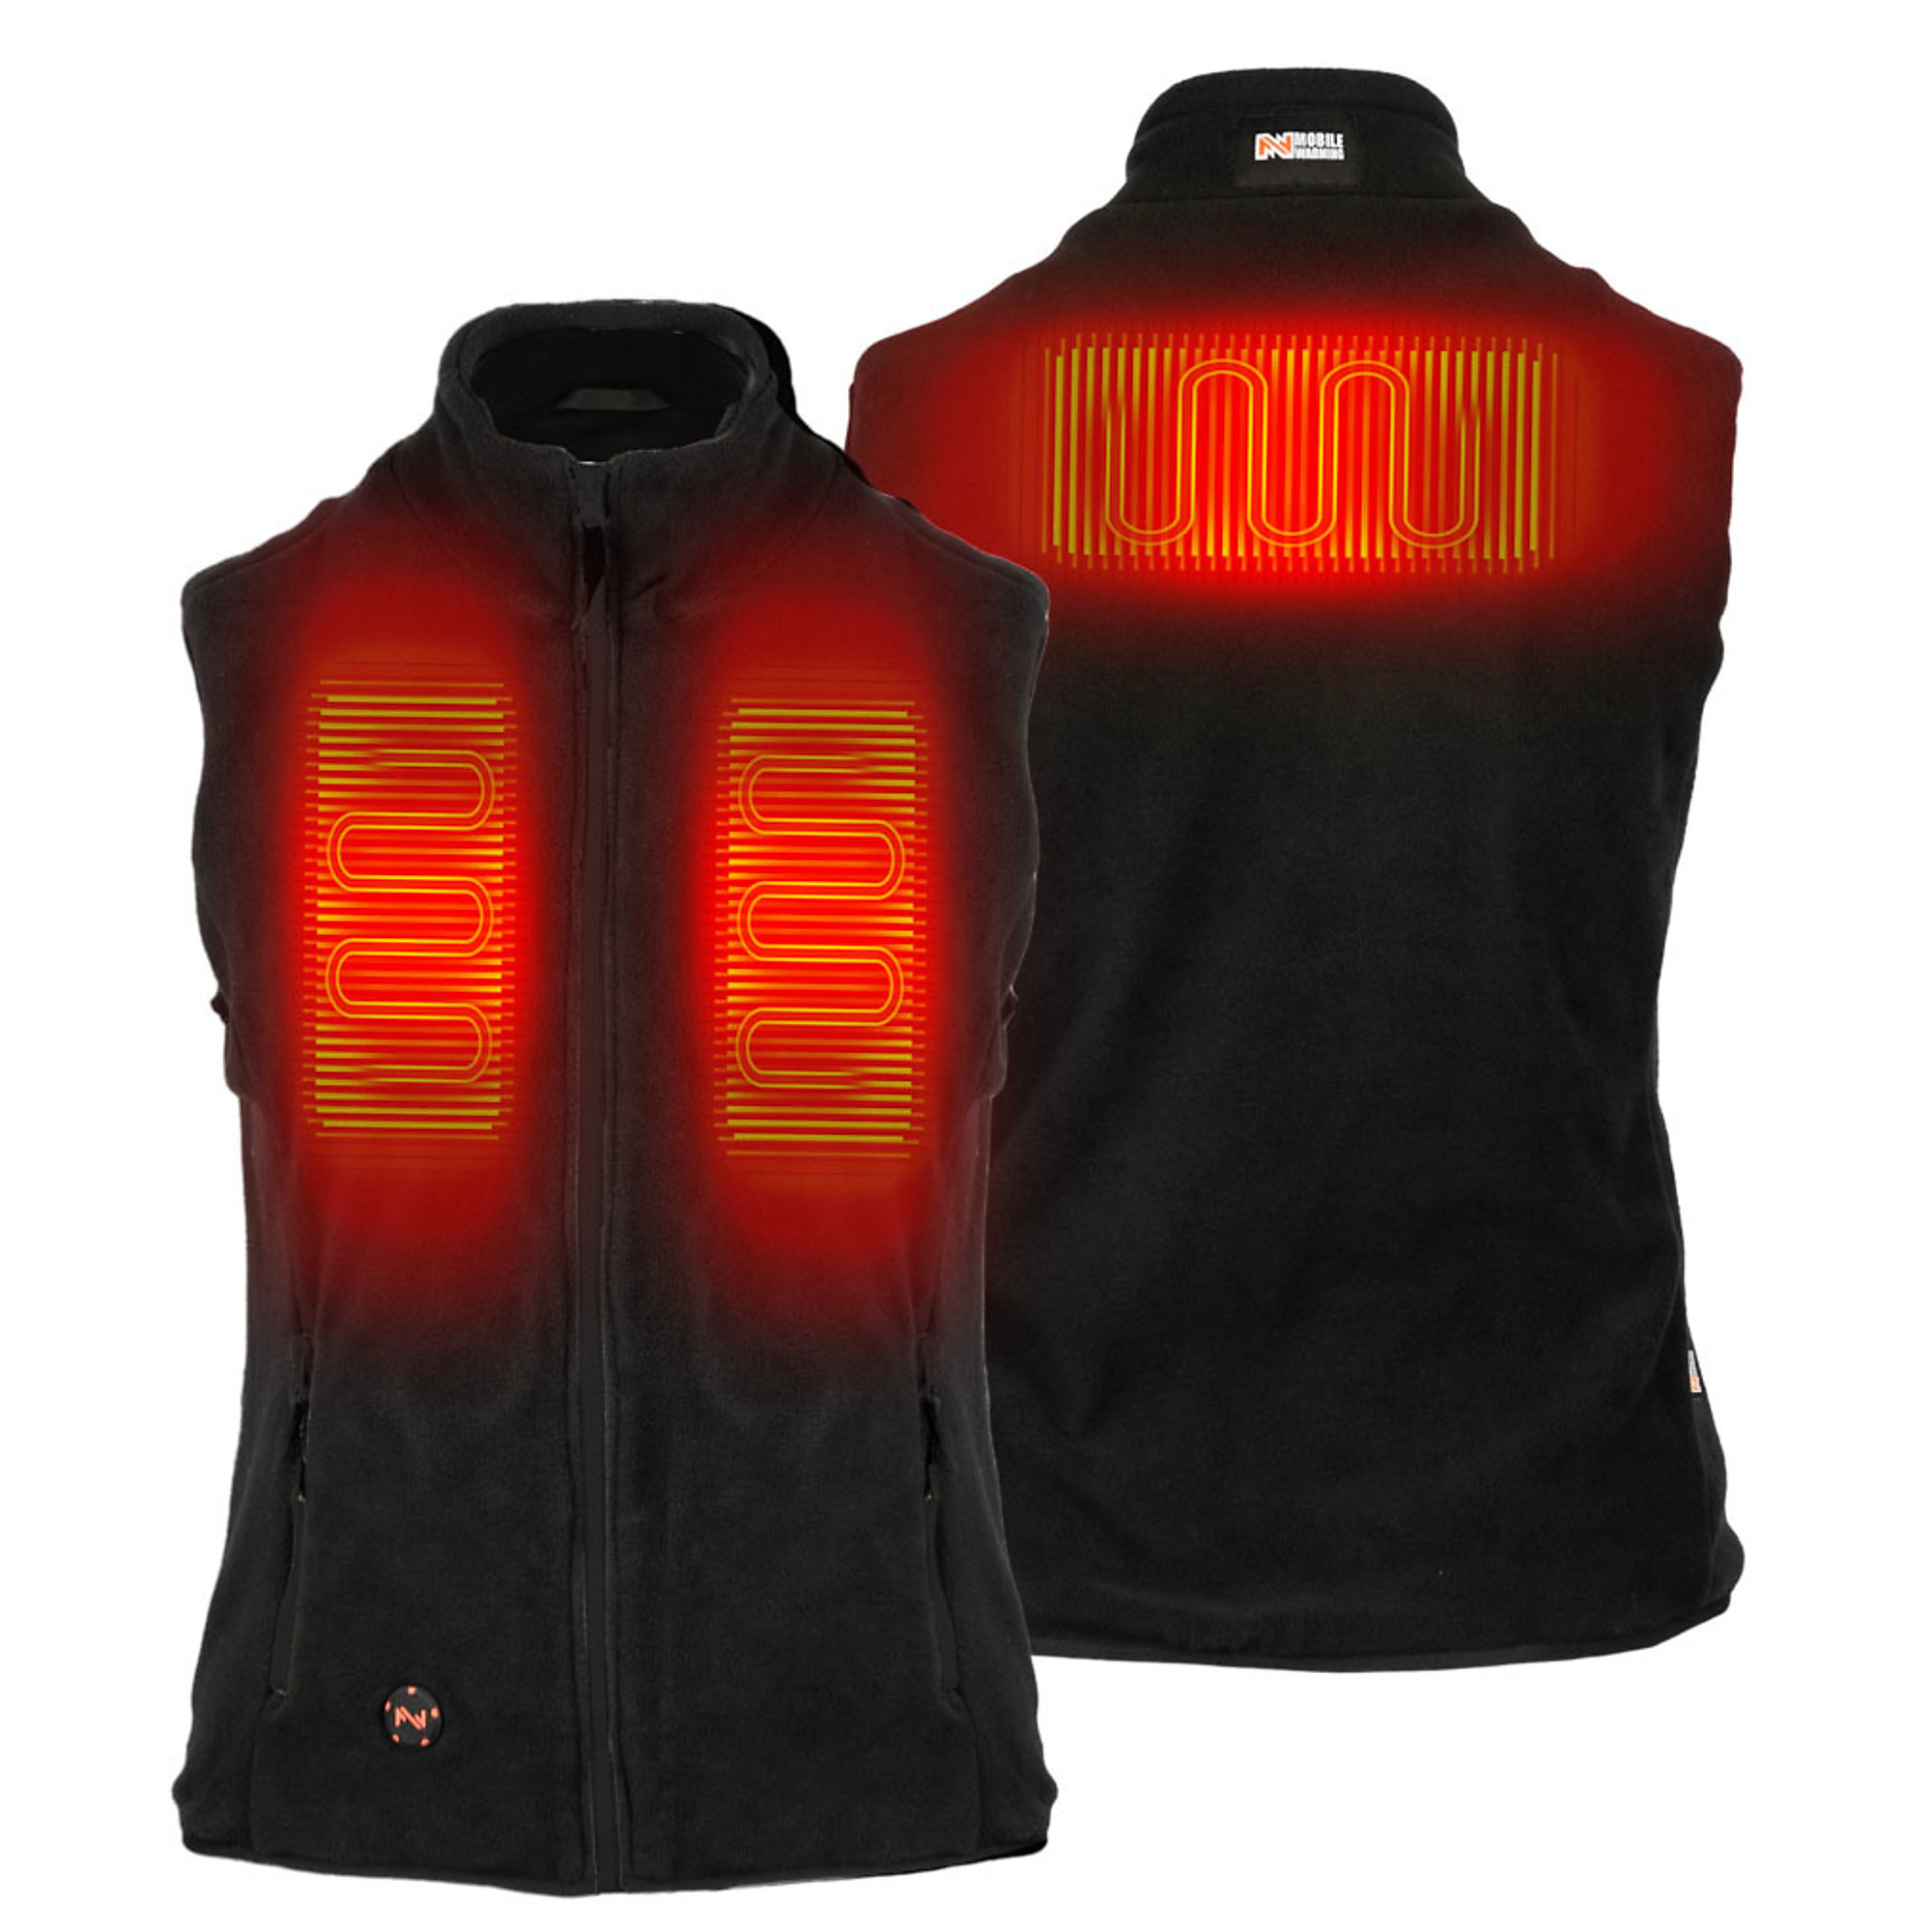 Fieldsheer, Women's Trek Heated Vest with 7.4v Battery, Size XL, Color Black, Model MWWV18010522